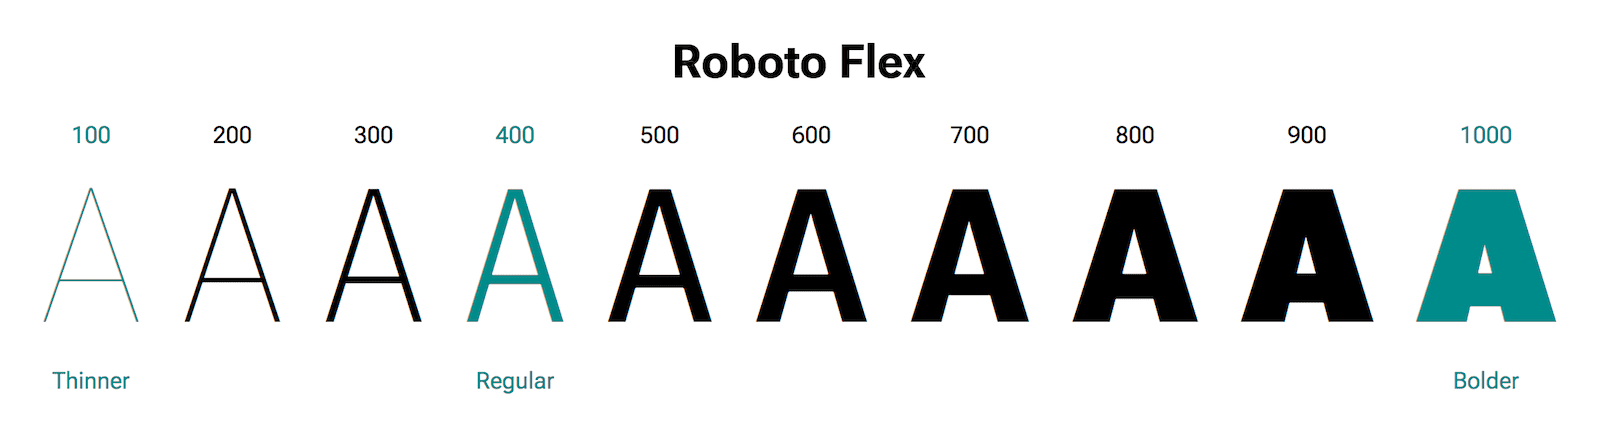 Буква «А» показана разным весом.